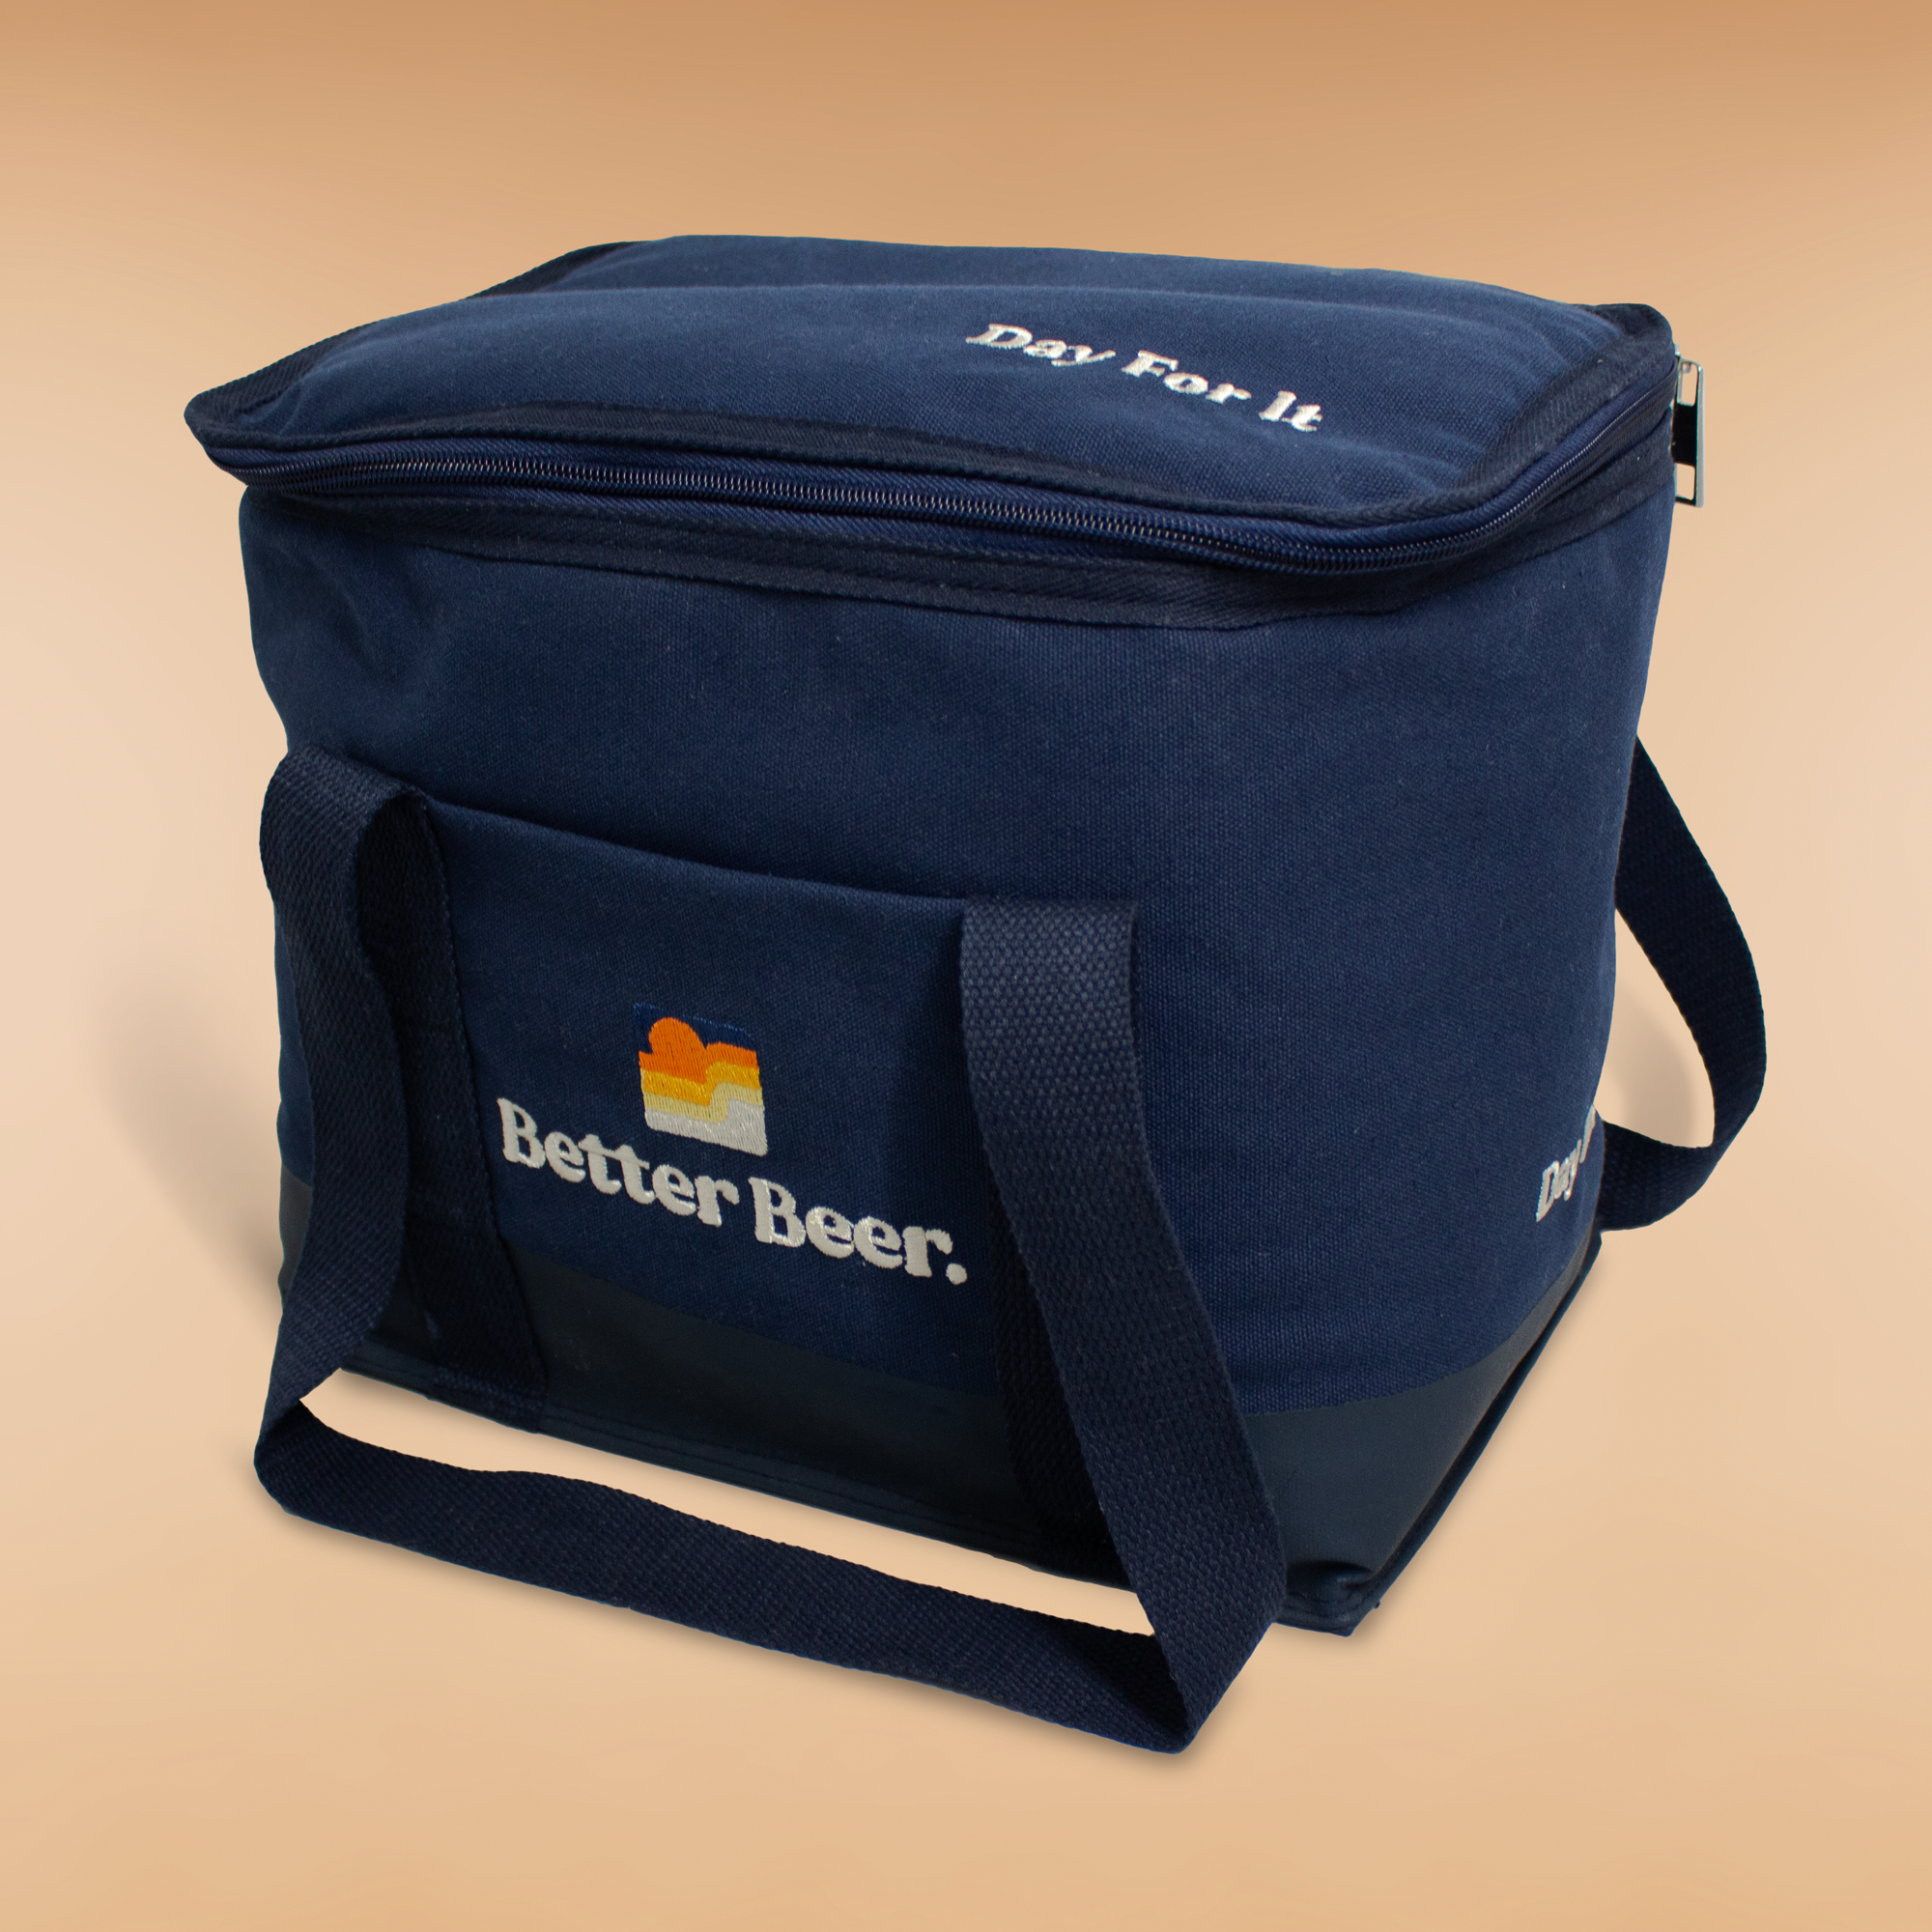 The Soft Cooler Bag